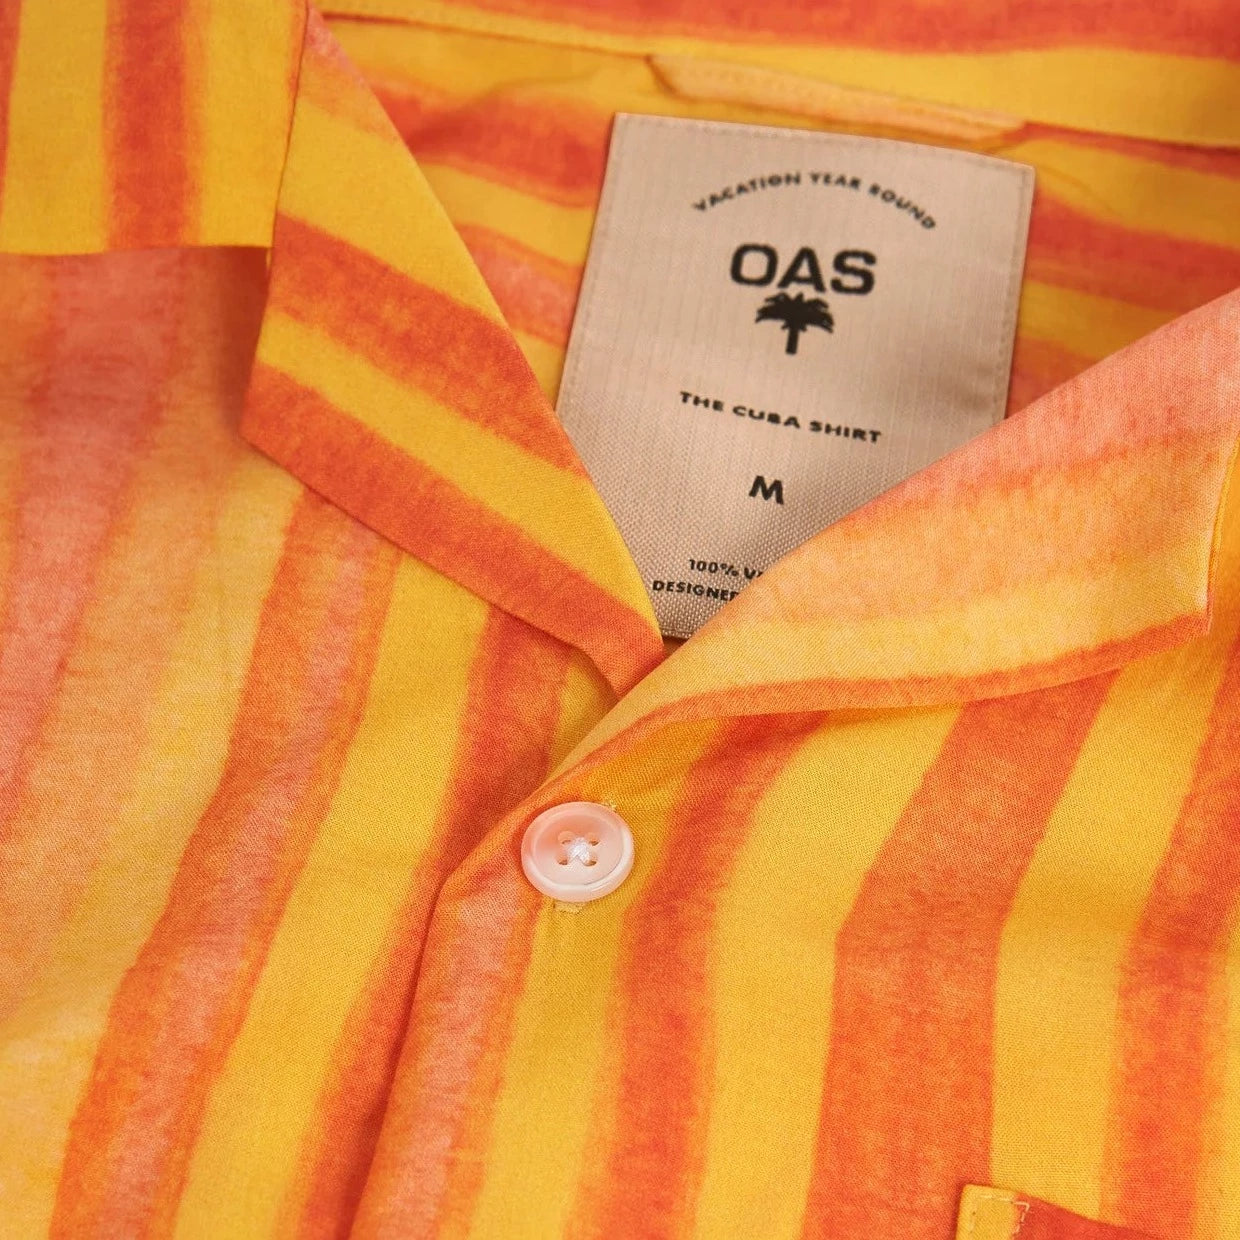 Orangina Shirt S/S: Orange/Peach/Yellow